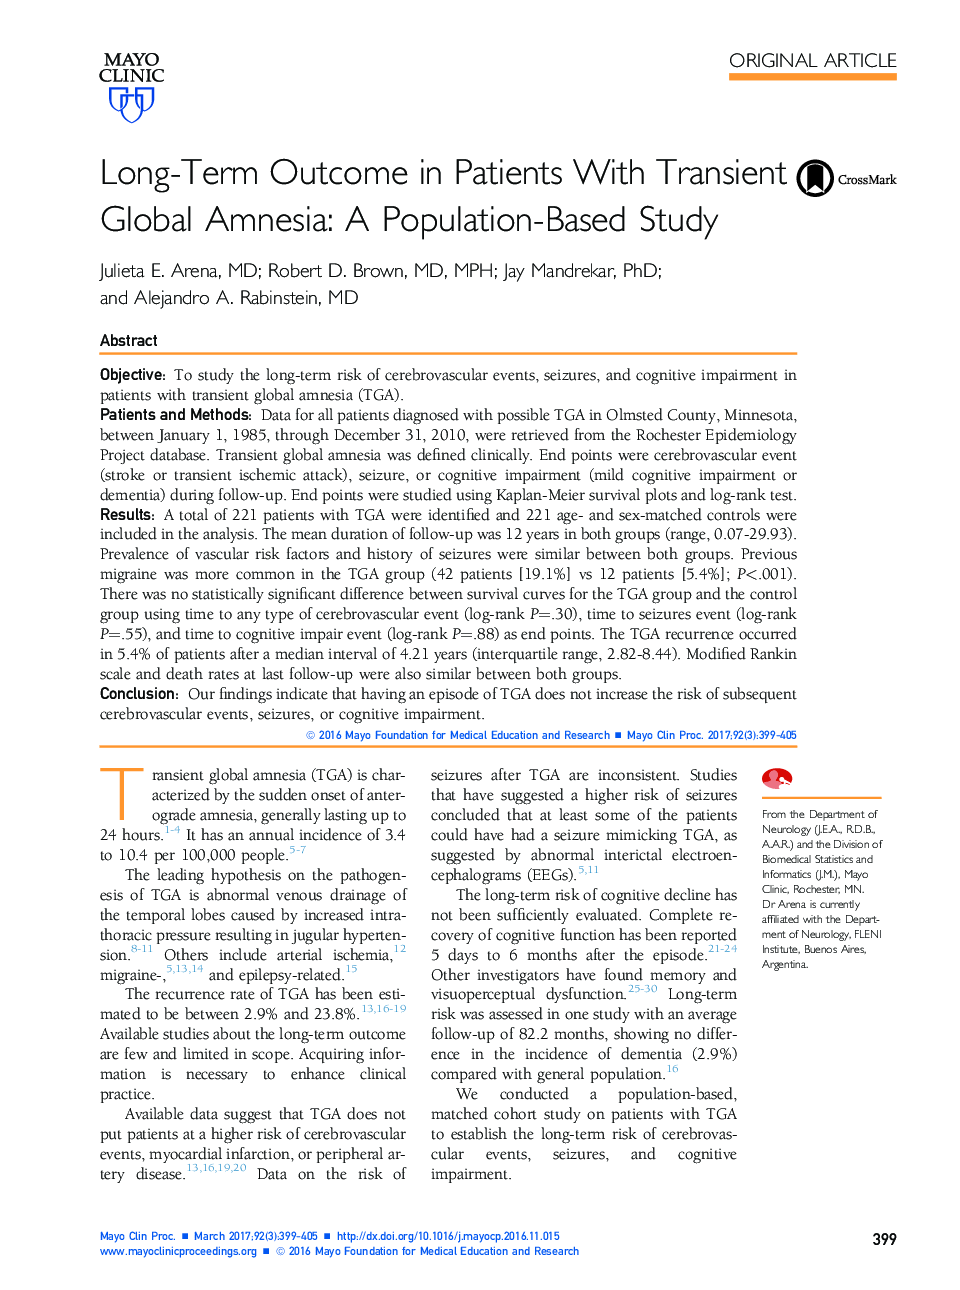 نتایج بلند مدت در بیماران مبتلا به آمنیازیس جهانی: یک مطالعه مبتنی بر جمعیت 